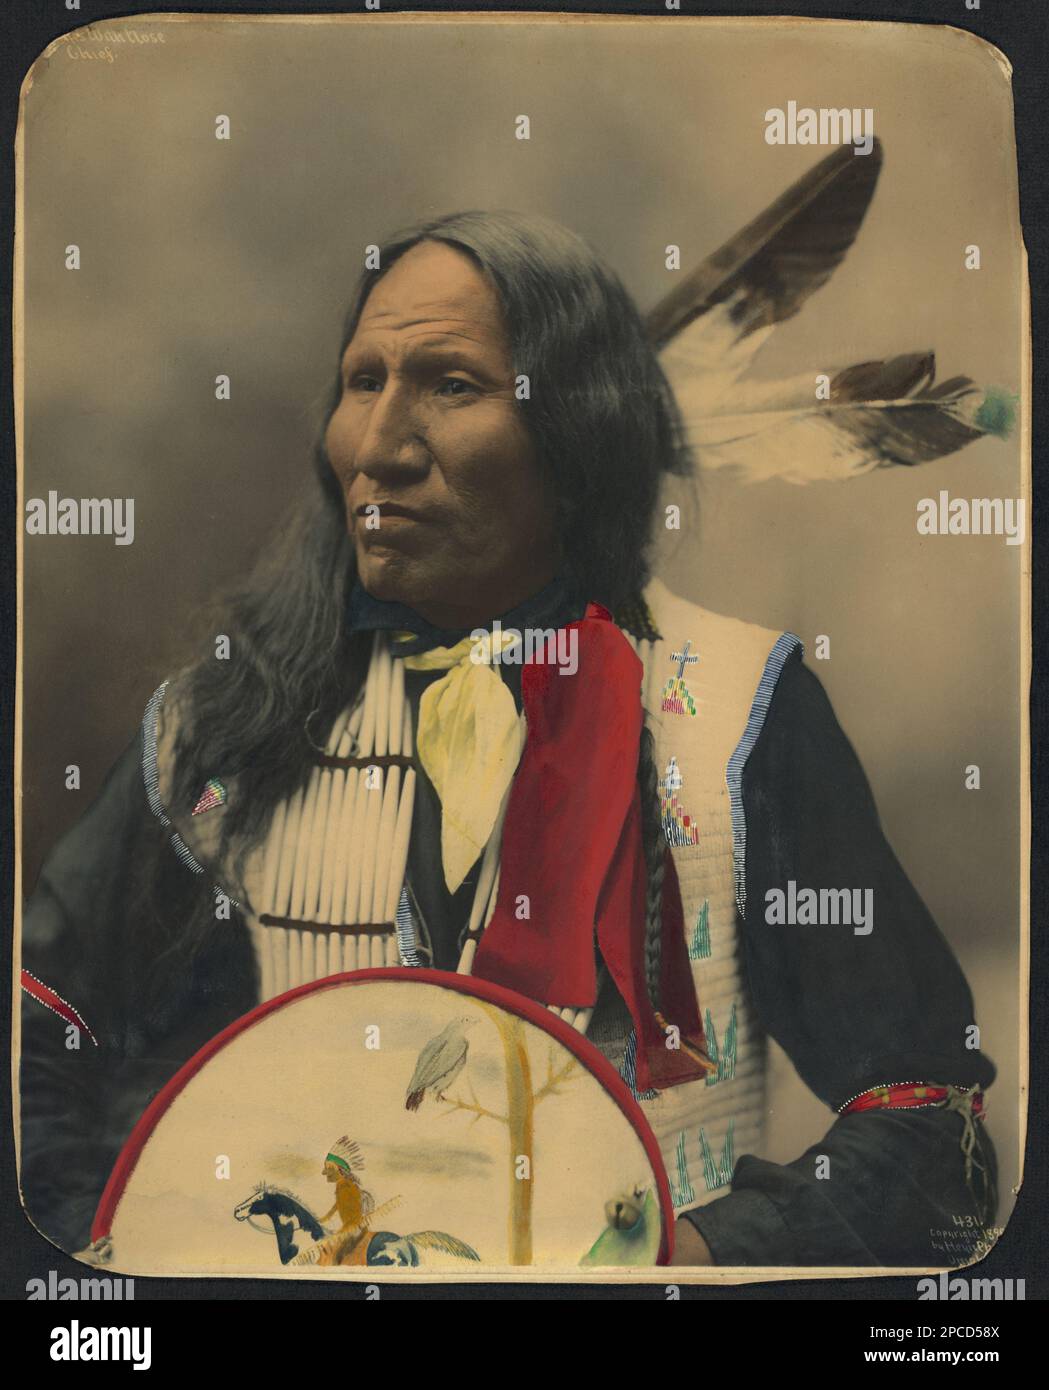 1899 , USA : Native American CHIEF Strikes with Nose , Oglala Sioux Chief . Foto di Heyn Photo, Omaha , Nebrasca . - STORIA - foto storiche - foto storica - indiani - INDIANI D' AMERICA - PELLEROSSA - nativi americani - indiani d'America del Nord - indiani d'America del Nord - CAPO TRIBU' INDIANO - GUERRIERO - GUERRIERO - ritratto - ritratto - SELVAGIO WEST - piuma - piume - piume ---- Archivio GBB Foto Stock